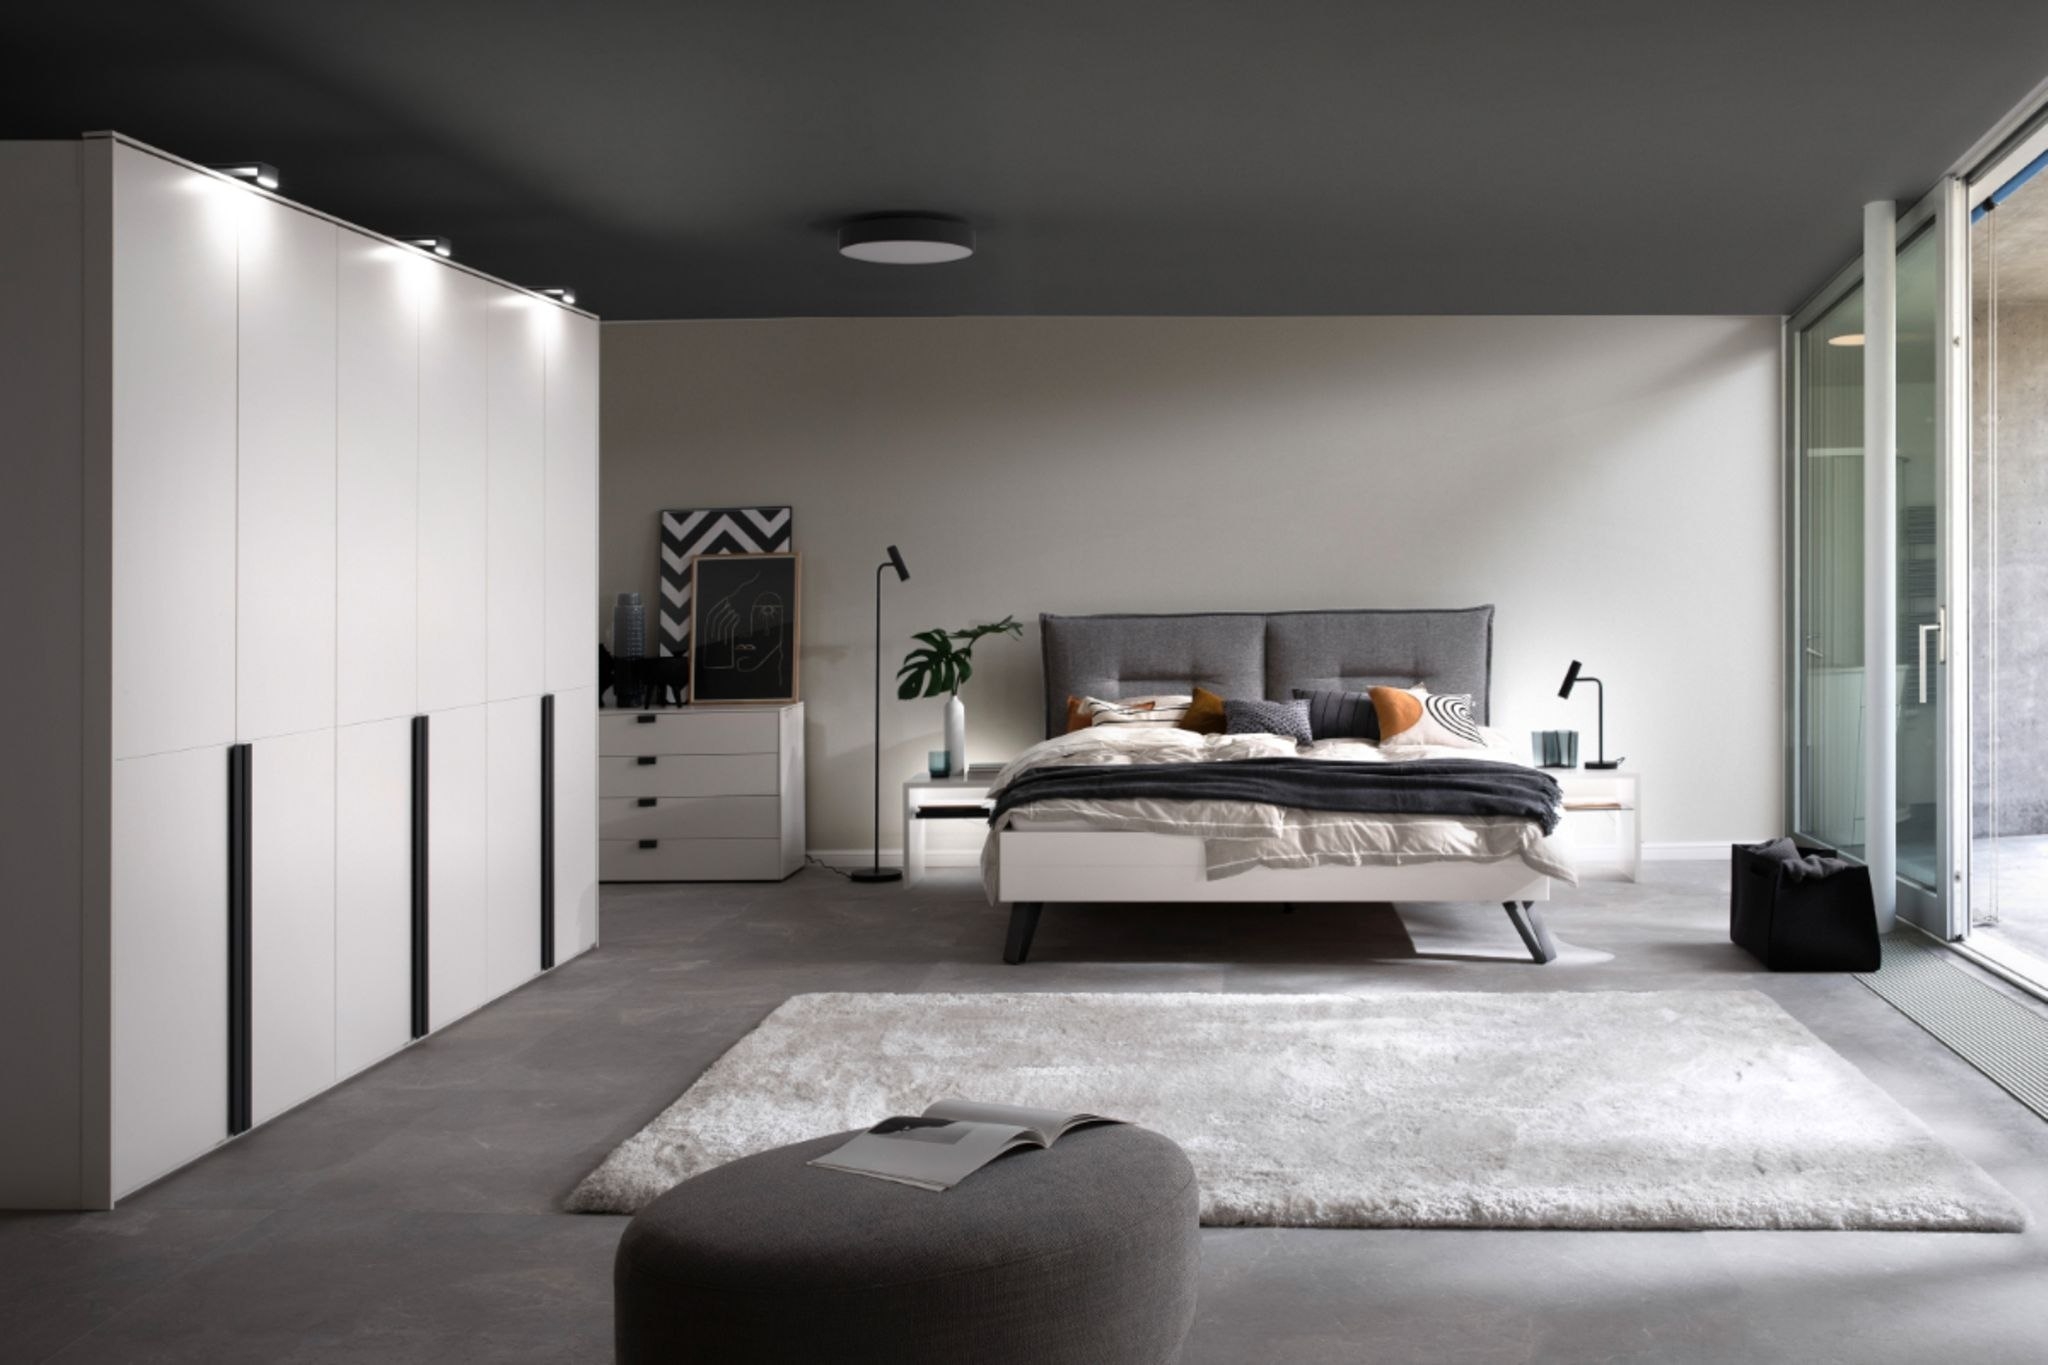 Dunkle Zimmerdecke Im Schlafzimmer - [Schöner Wohnen] with Schlafzimmer Farbe Decke